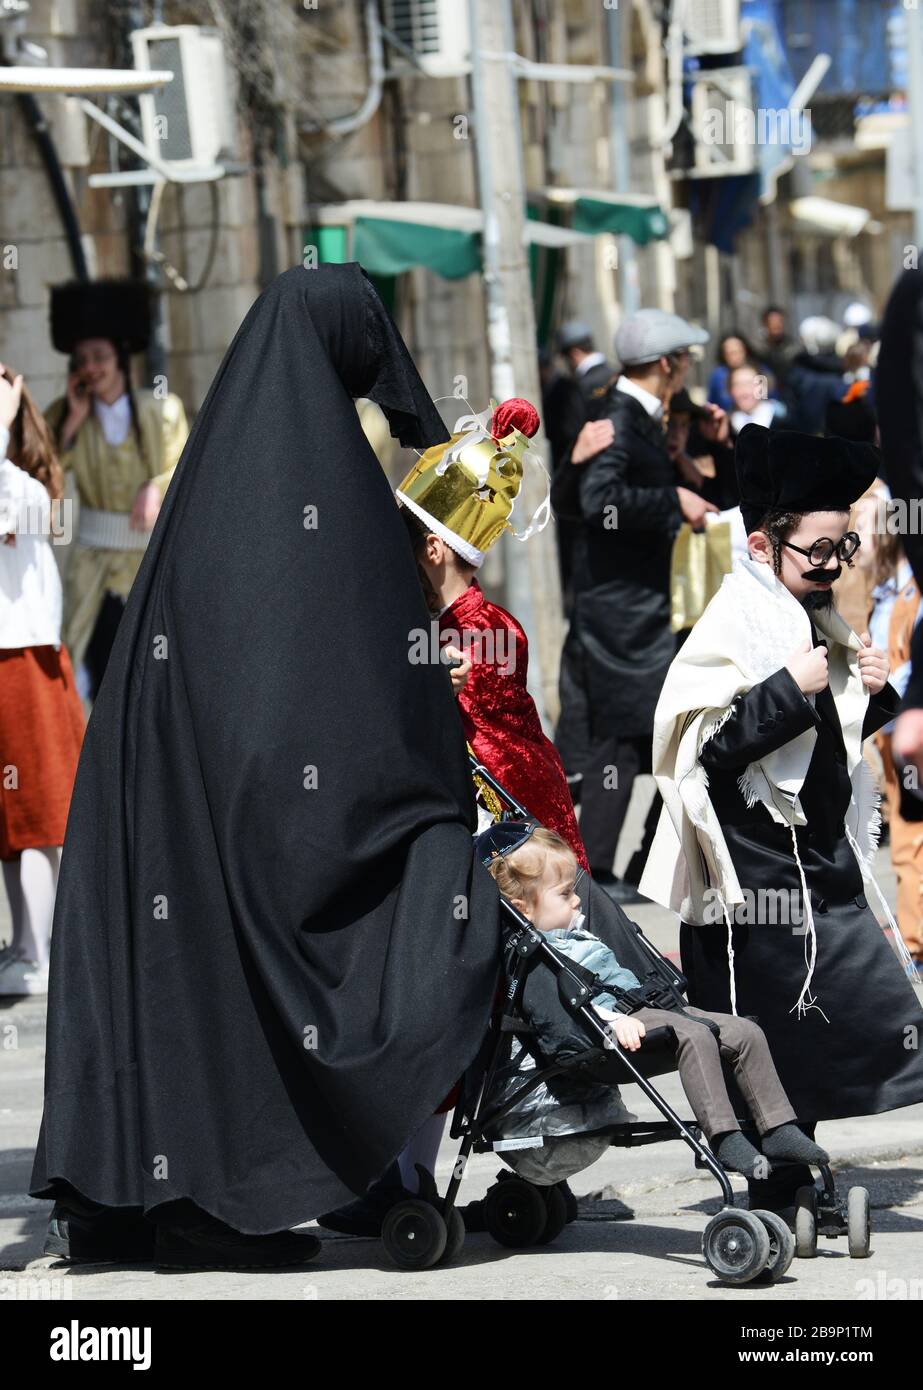 Une femme juive ultra-orthodoxe qui appartient à une secte extrême surnommée « les Talibans juifs » marche avec son visage et son corps complètement couverts. Banque D'Images